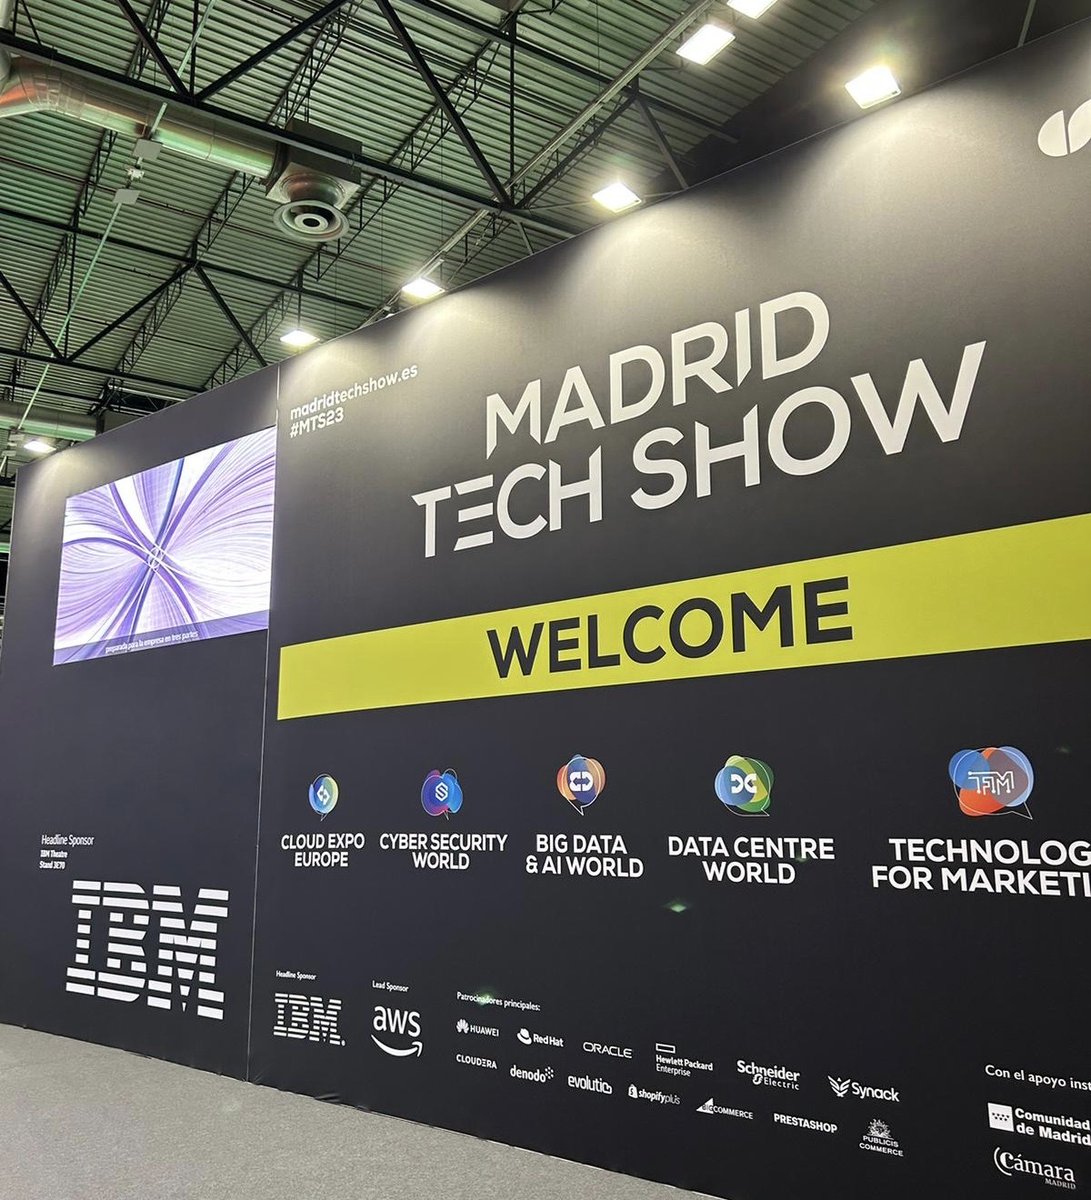 Hoy y mañana estamos en #MadridTechShow, hablando de lo último en #tecnología, #IA, #watsonx y mucho más. ¡Te esperamos en el stand 3E70!